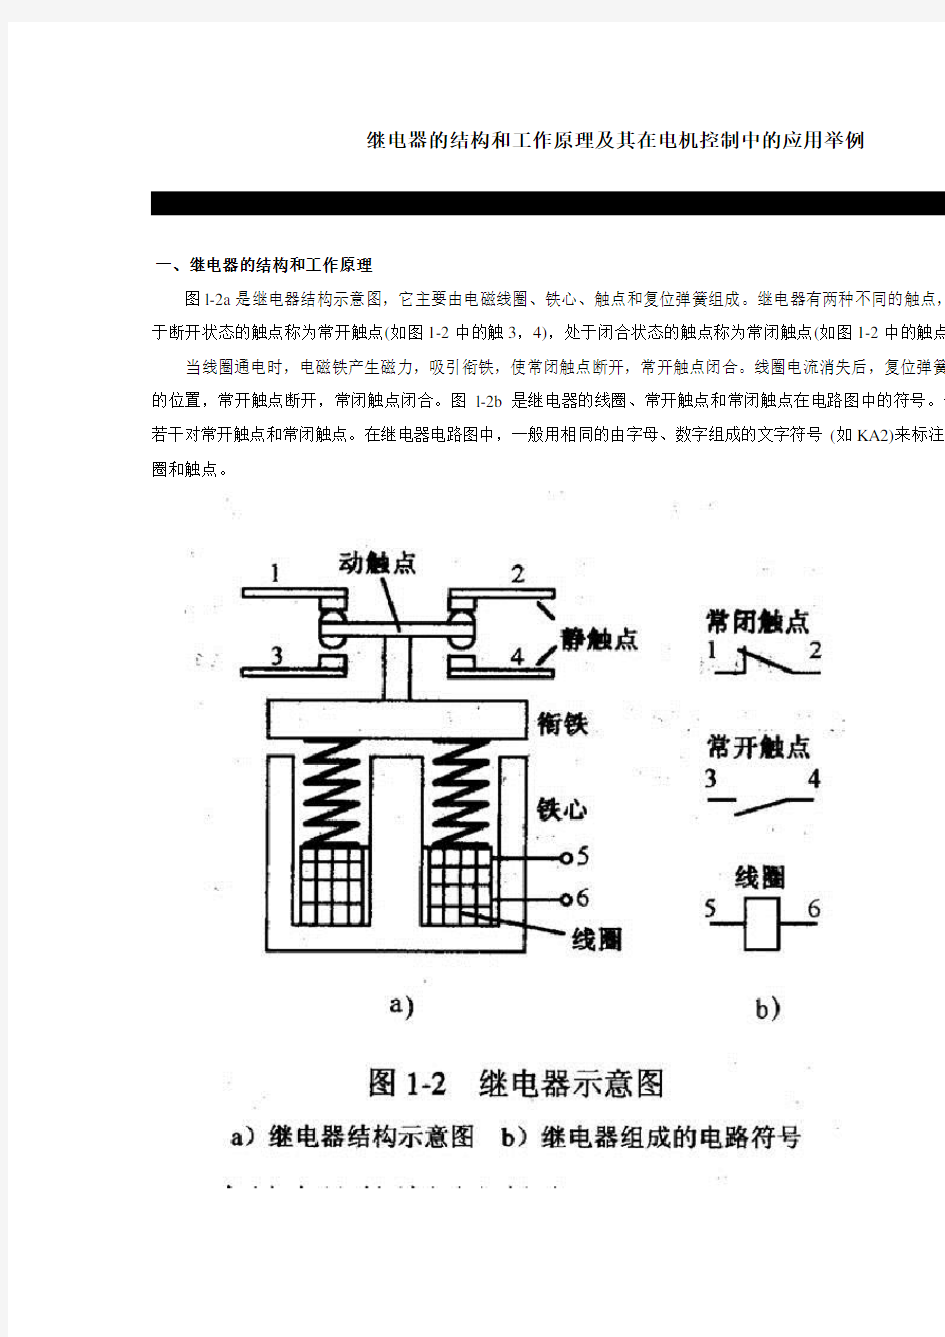 继电器的结构和工作原理及应用举例